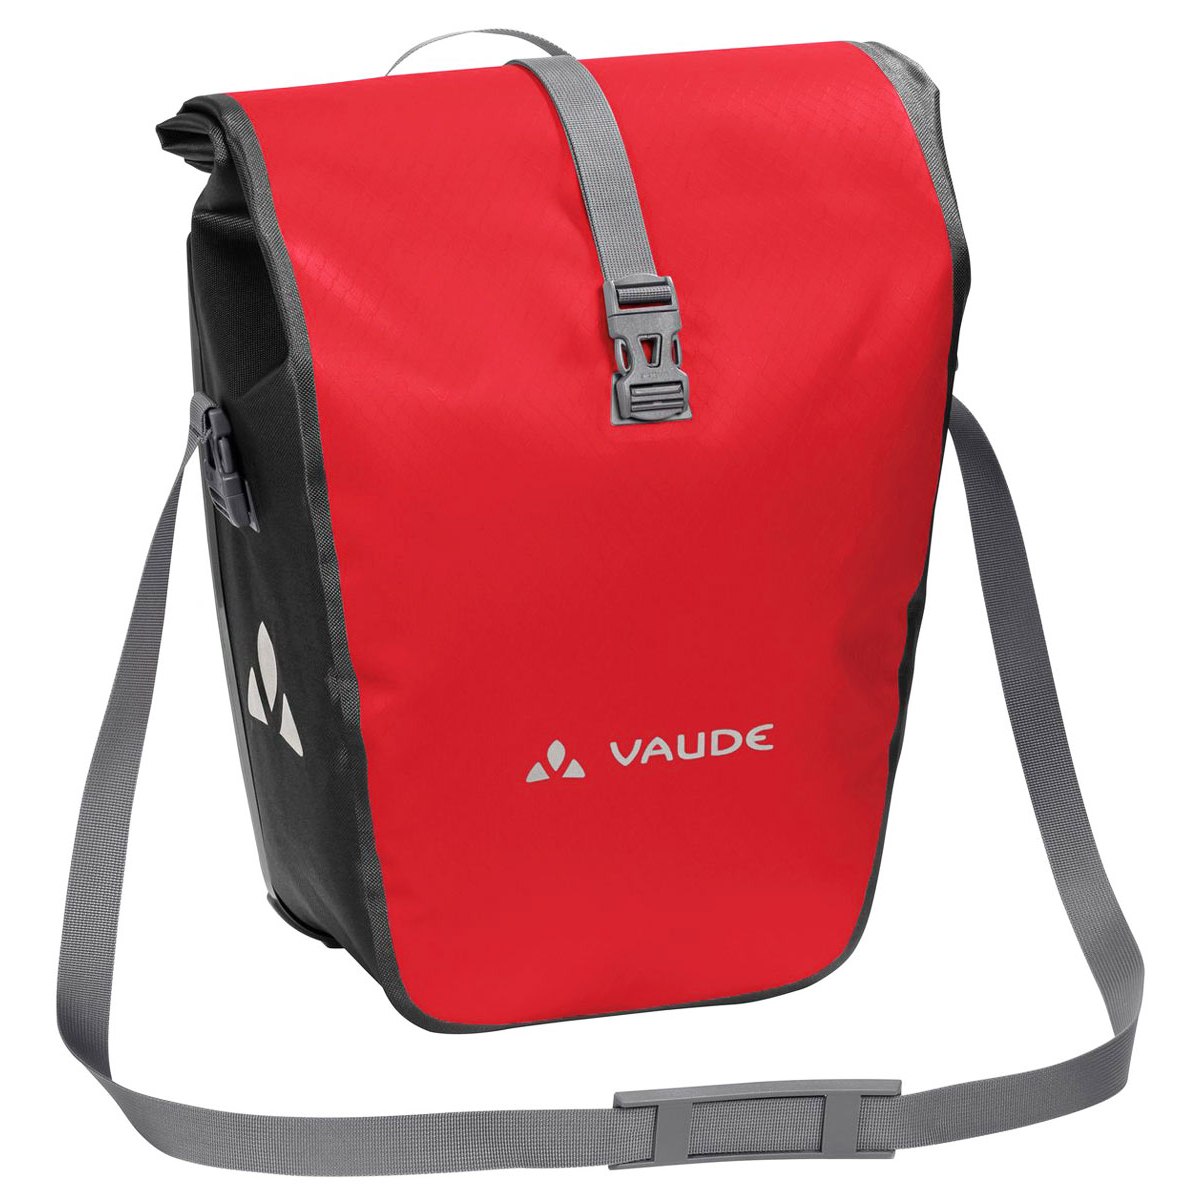 Productfoto van Vaude Aqua Back Single Fietstas 24L - rood